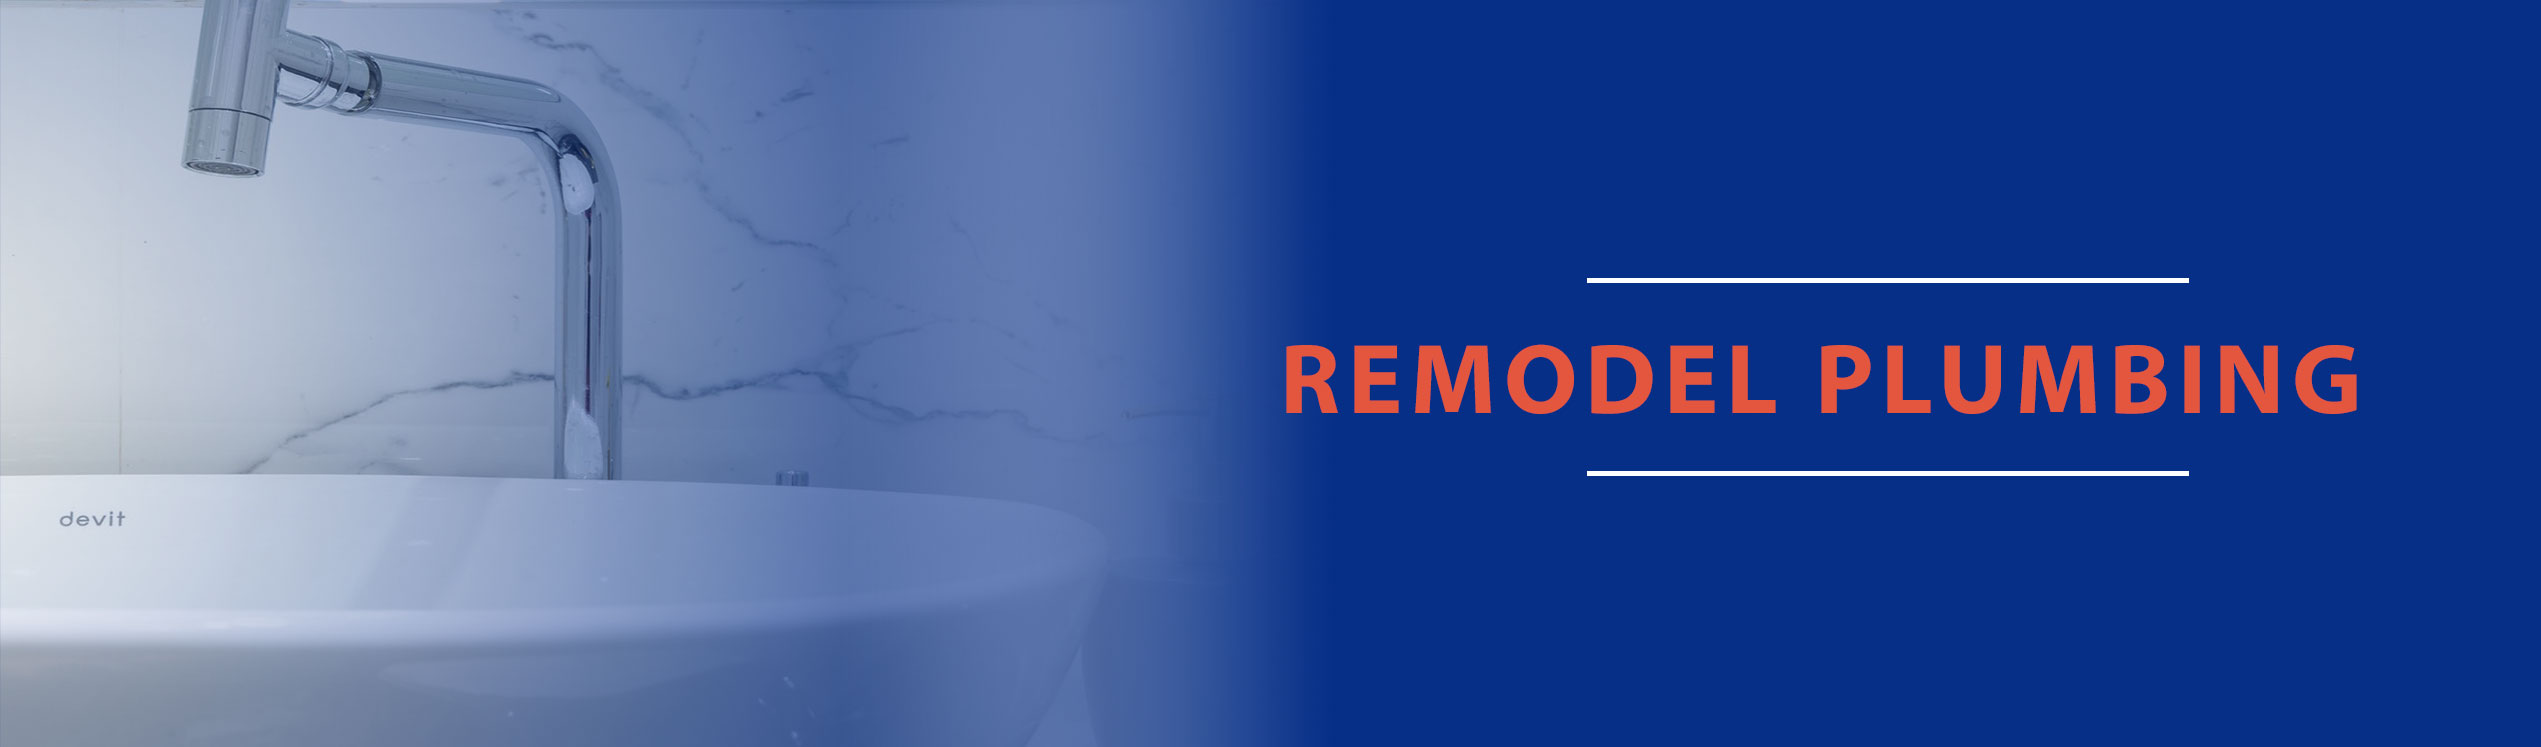 remodel plumbing billings